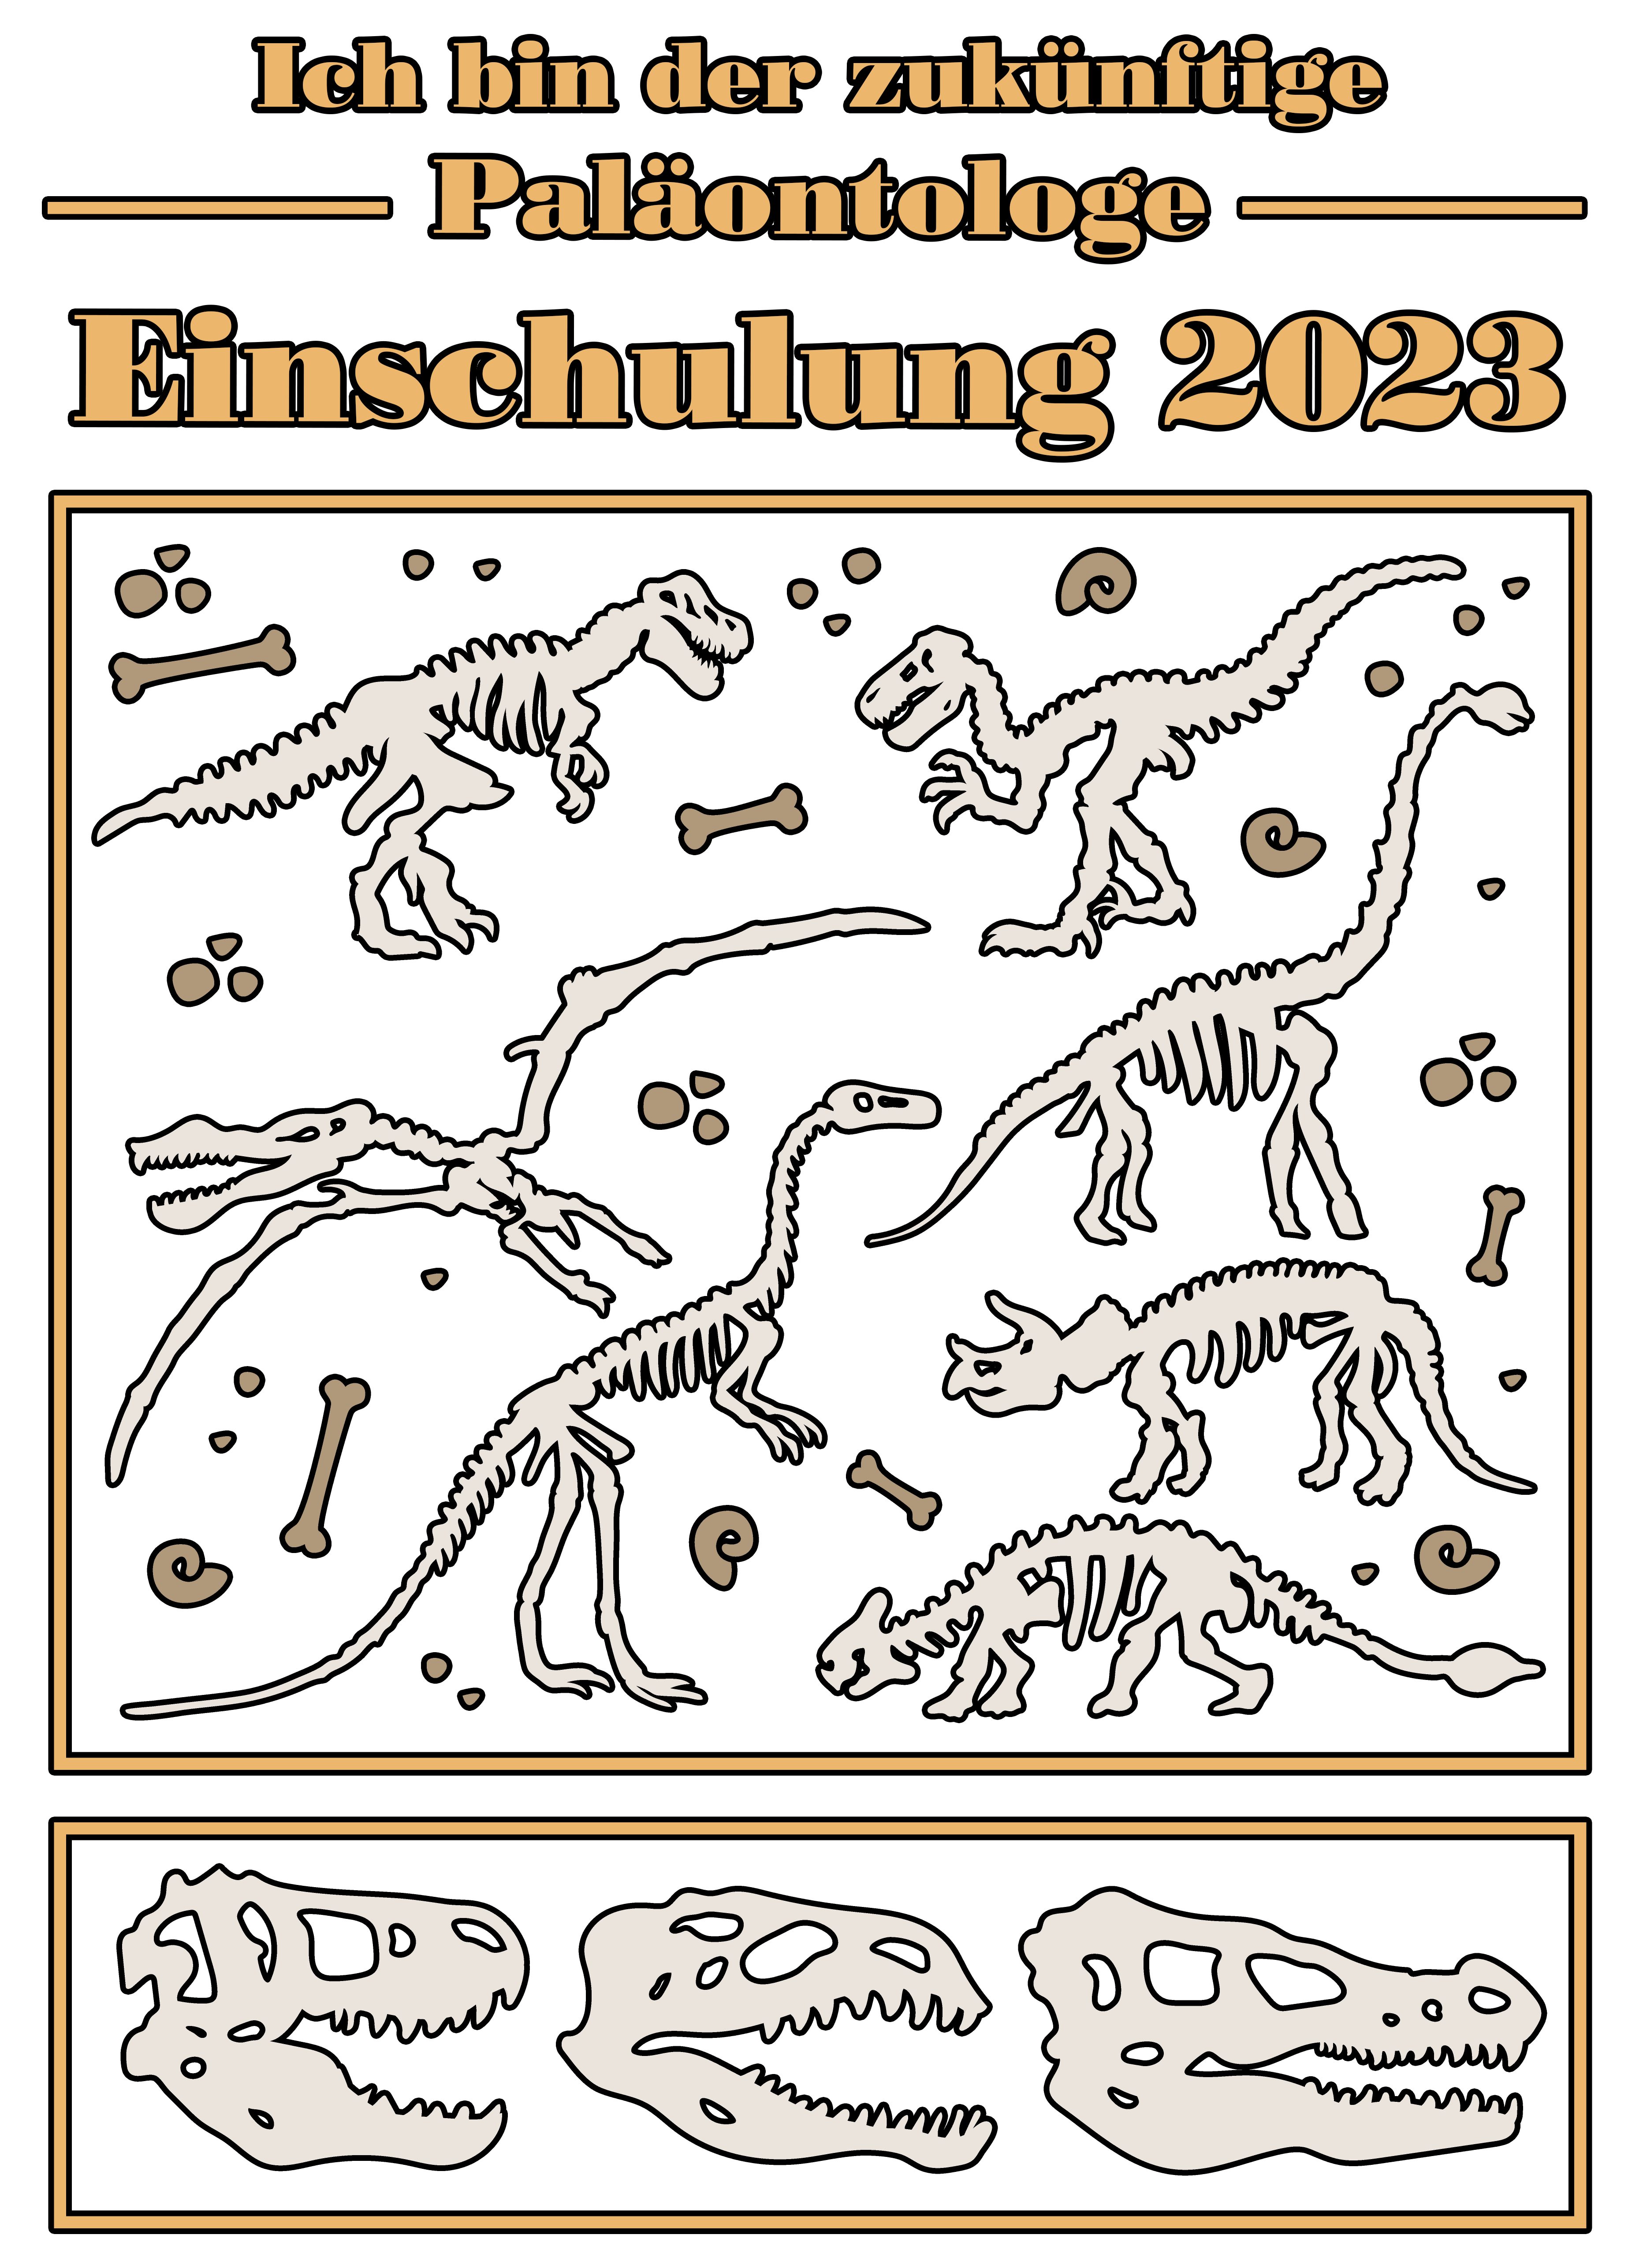 Baumwollshirt weiß, blau, Skeletten Einschulung T-Shirt mit Paläontologe Dino 2023, bedrucktes i36 schwarz, zukünftige rot, Print-Shirt Kinder MyDesign24